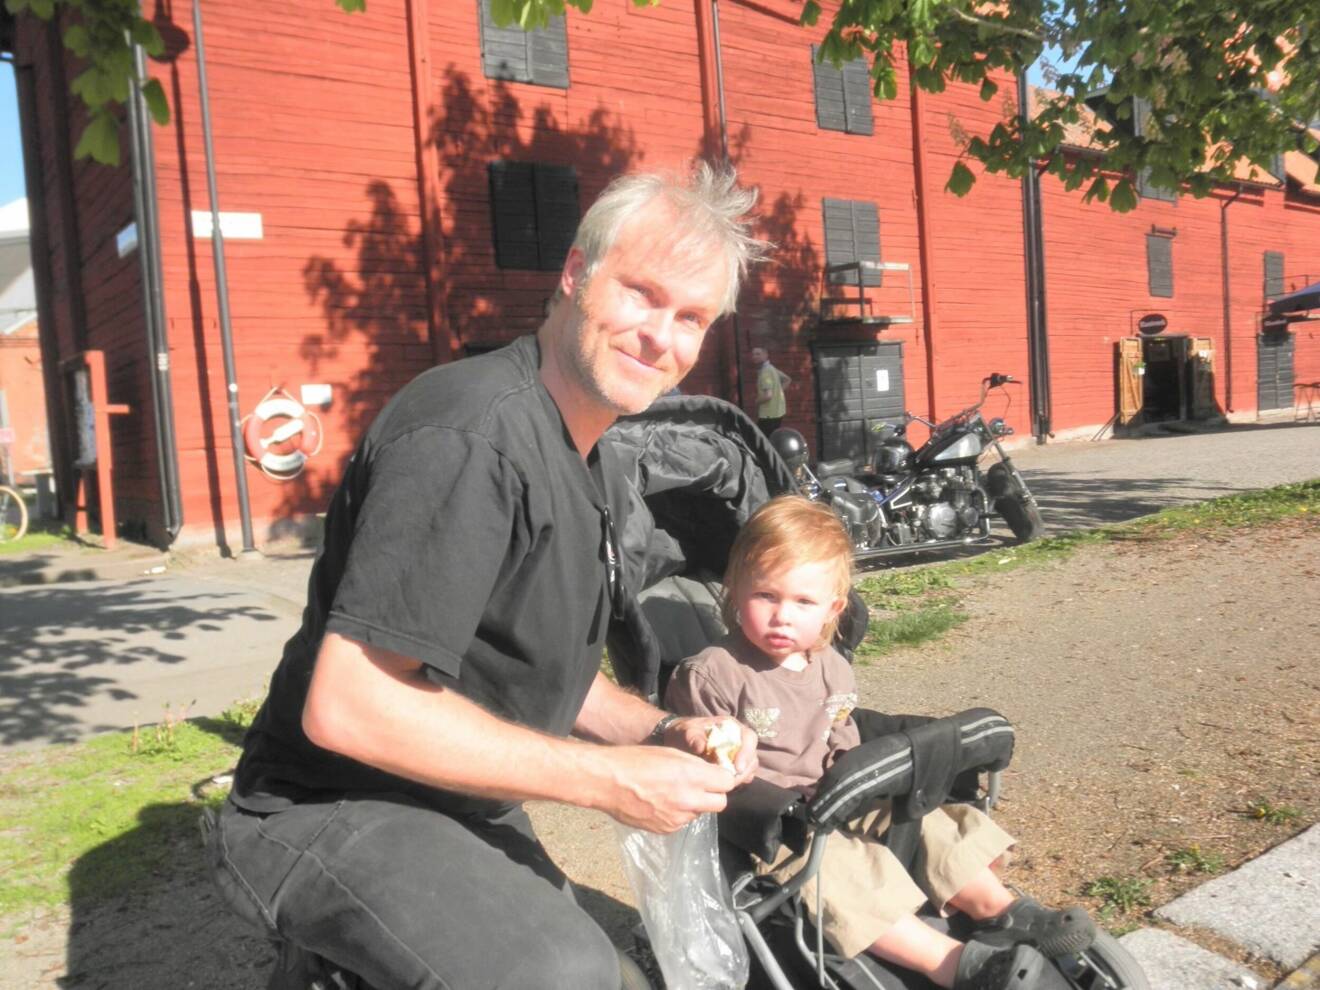 En man i 45-årsåldern sitter på huk framför en faluröd byggnad med sin lille son i barnvagn.